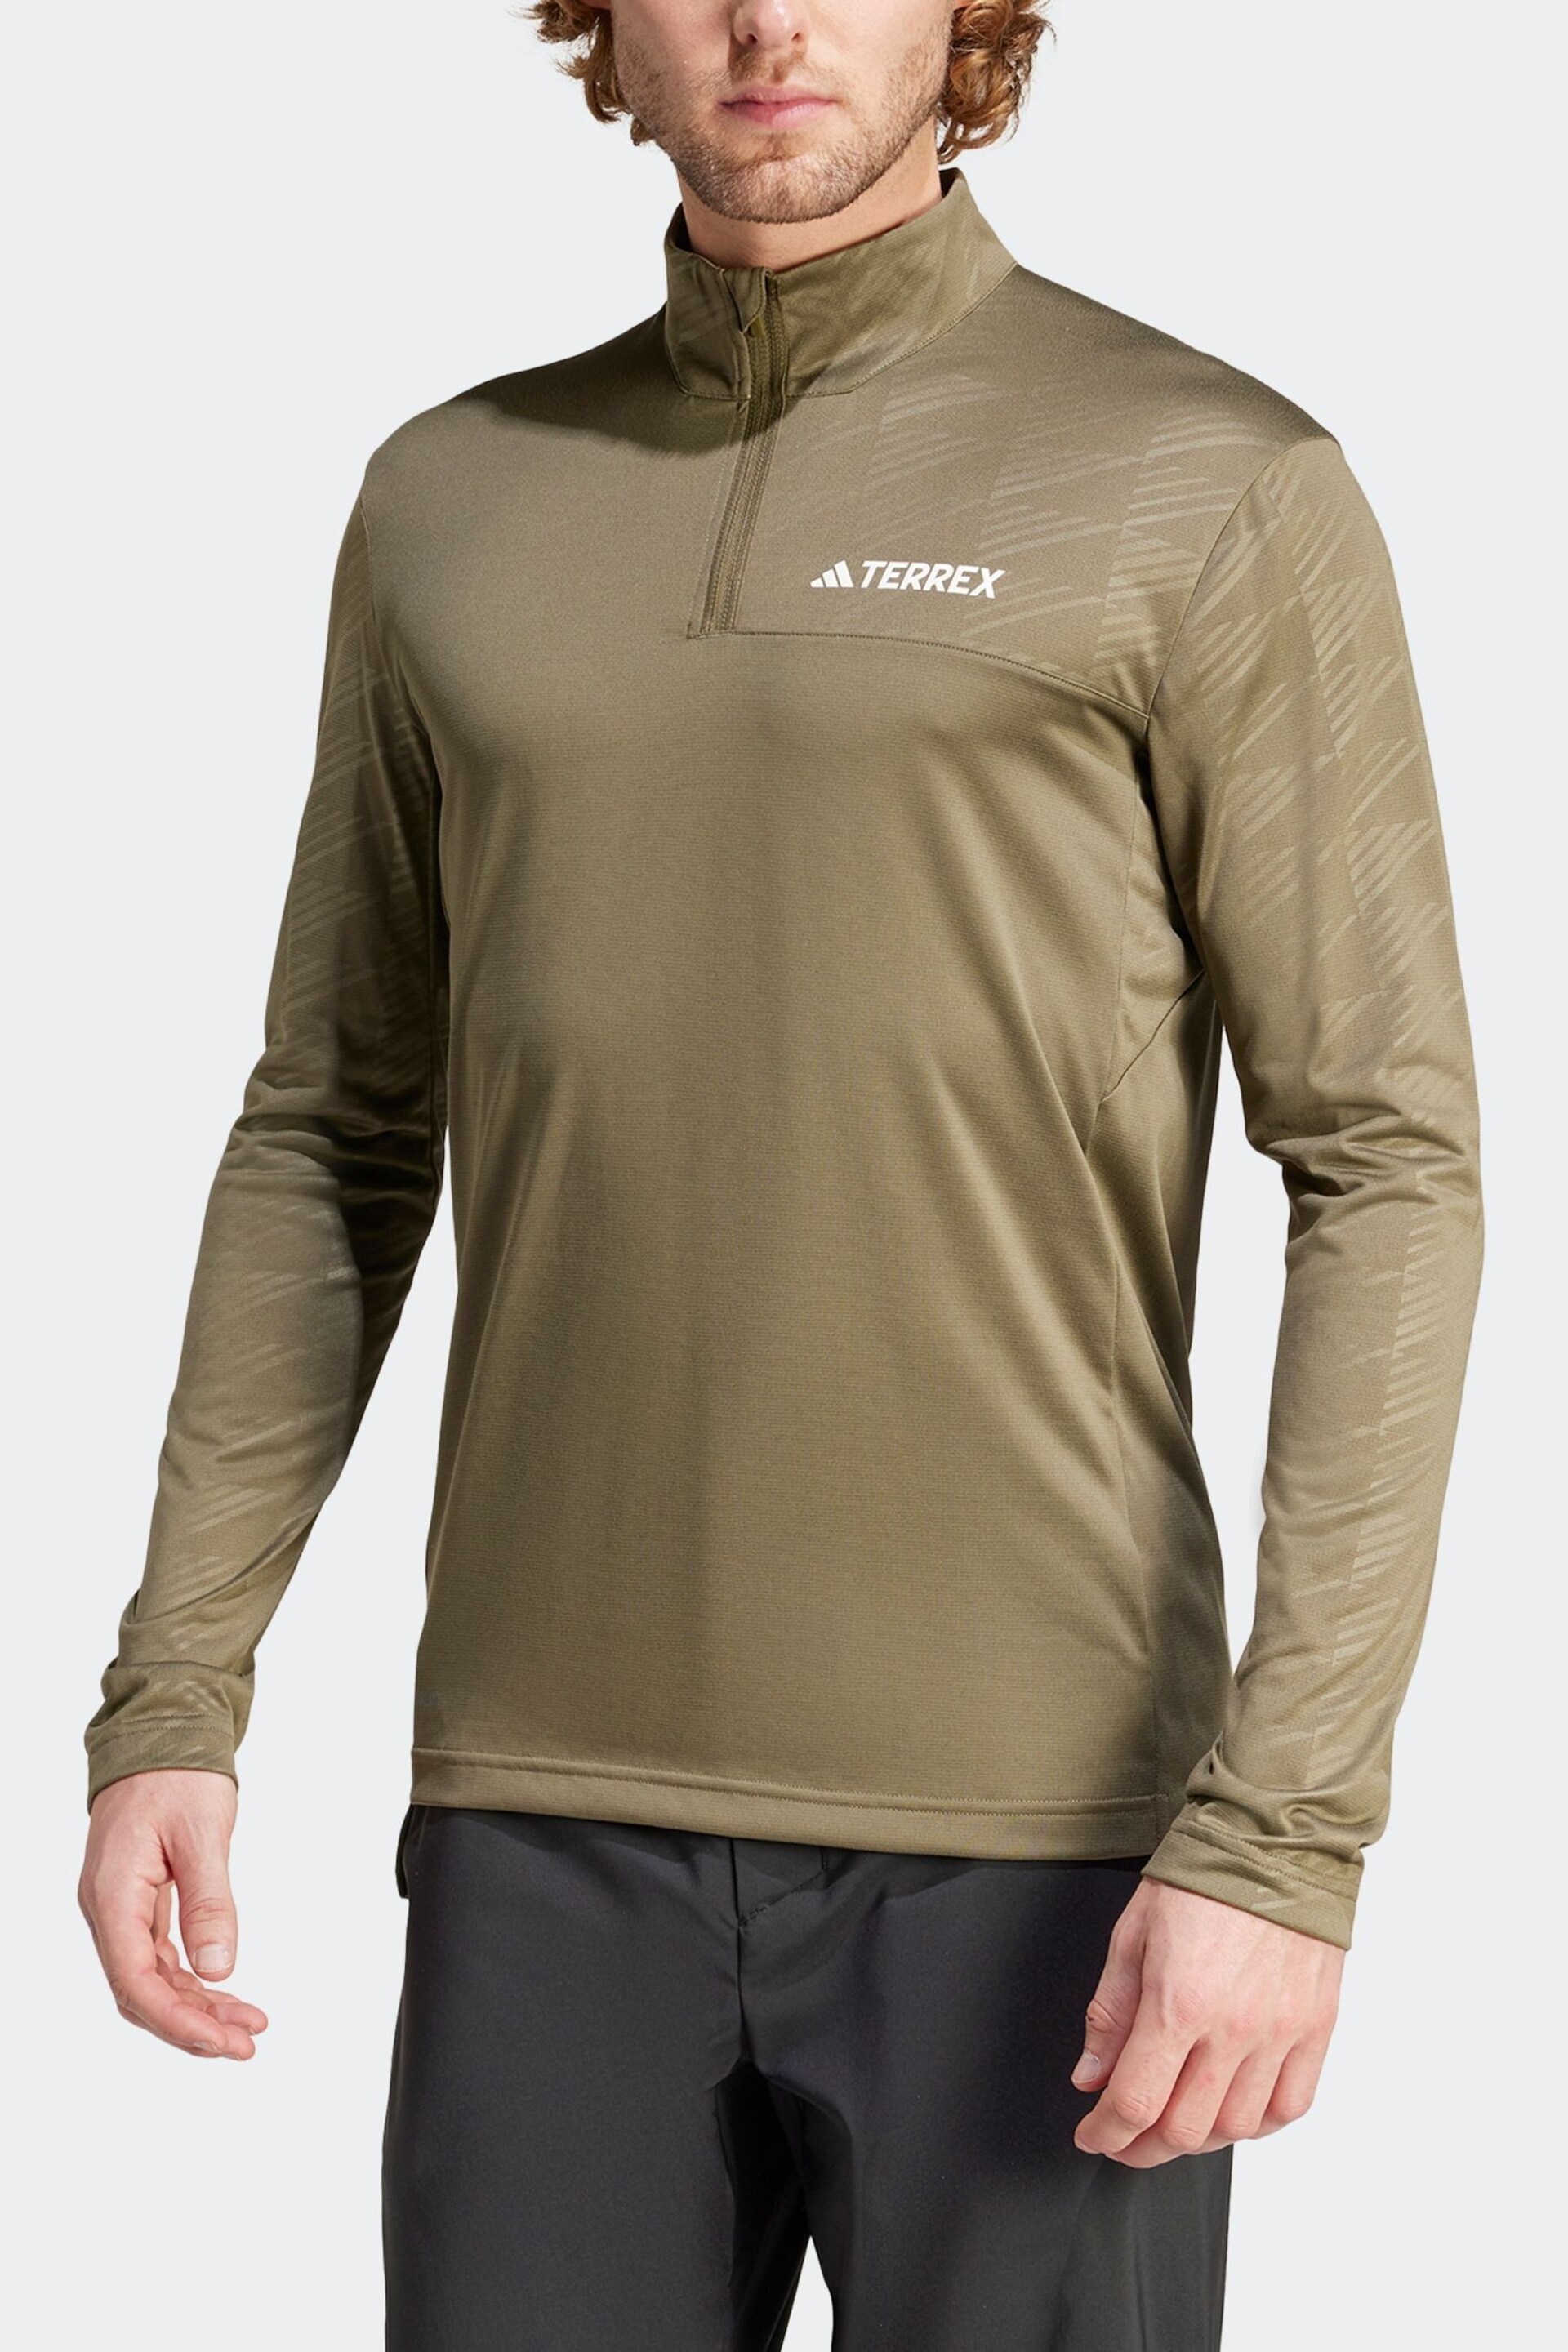 adidas Terrex Khaki Green Half Zip Long Sleeve Fleece - Image 5 of 8